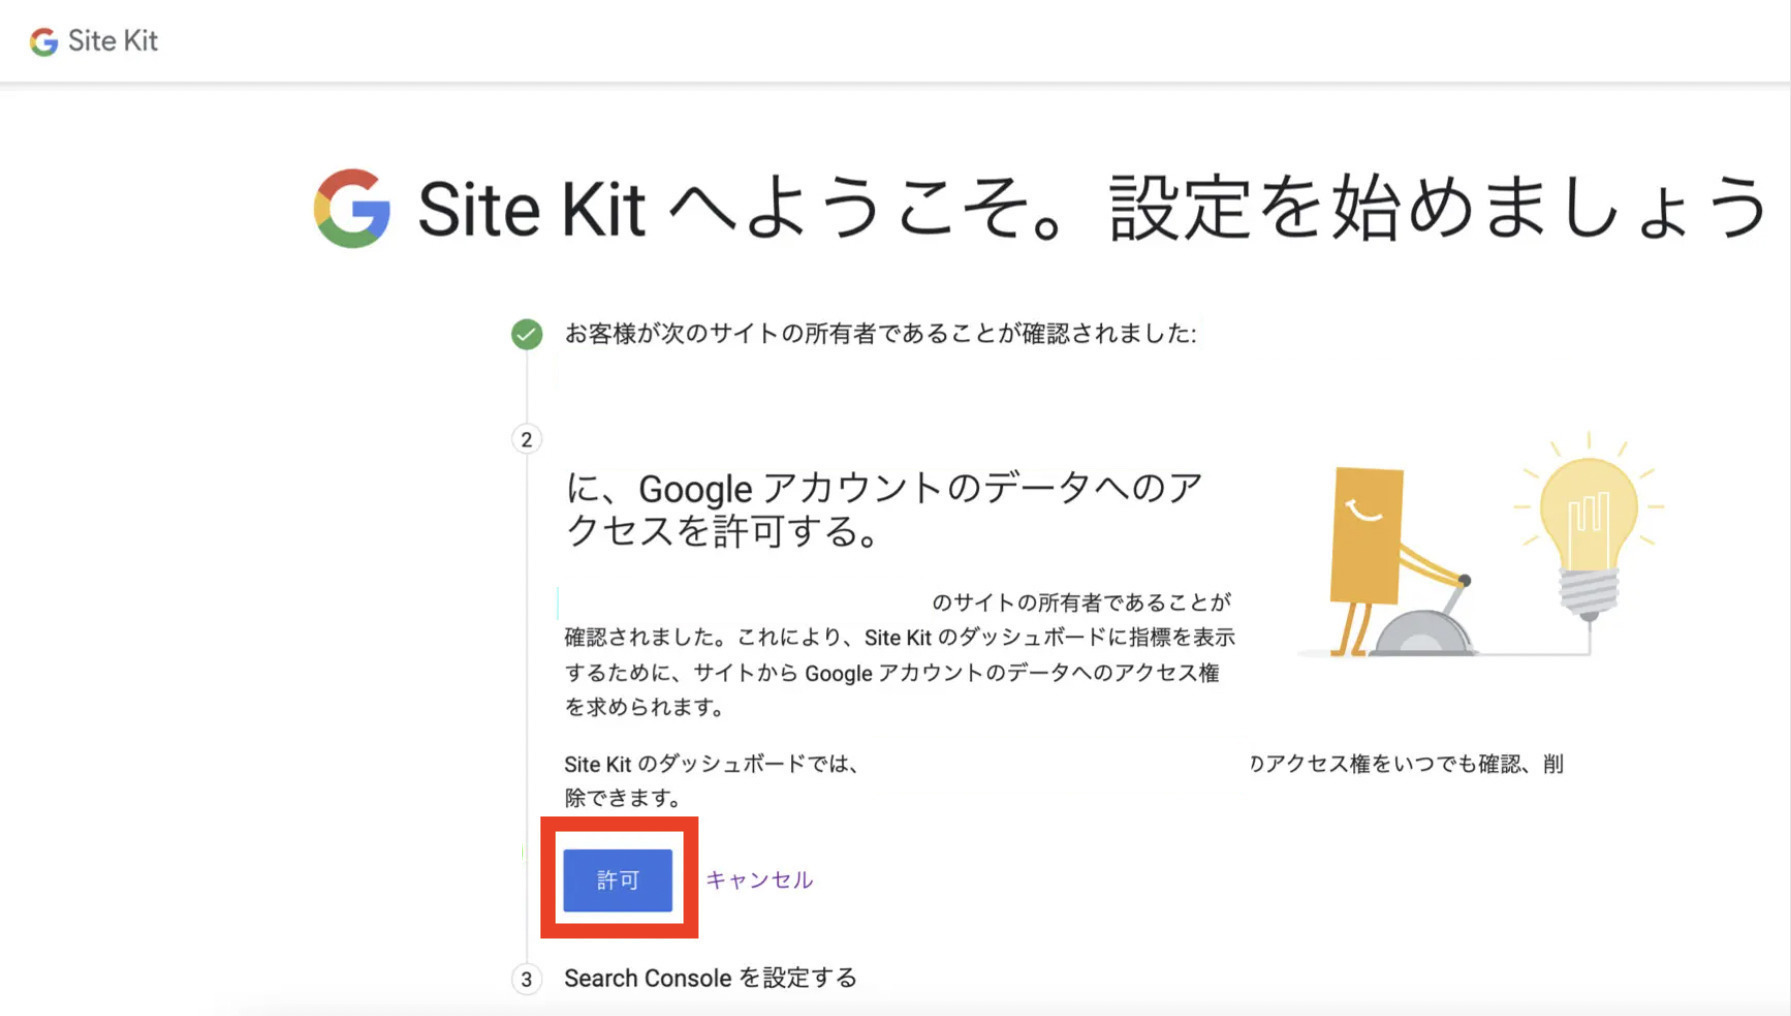 Site Kit by Google許可